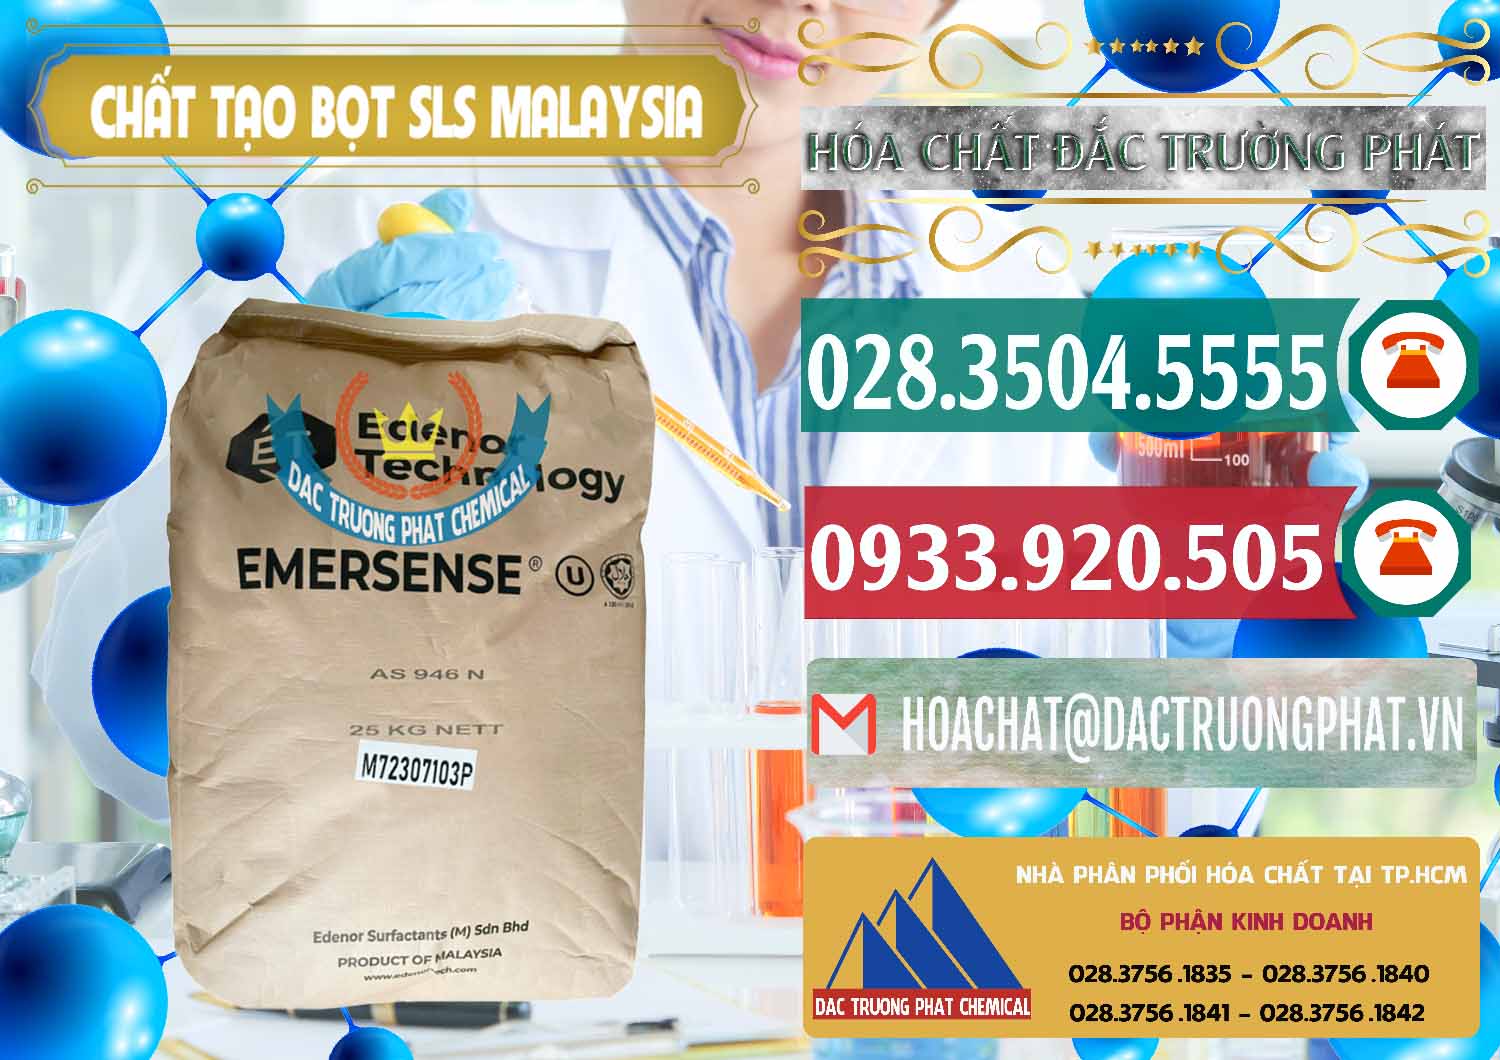 Nơi cung cấp _ bán Chất Tạo Bọt SLS Emersense Mã Lai Malaysia - 0381 - Nơi chuyên phân phối ( bán ) hóa chất tại TP.HCM - muabanhoachat.vn